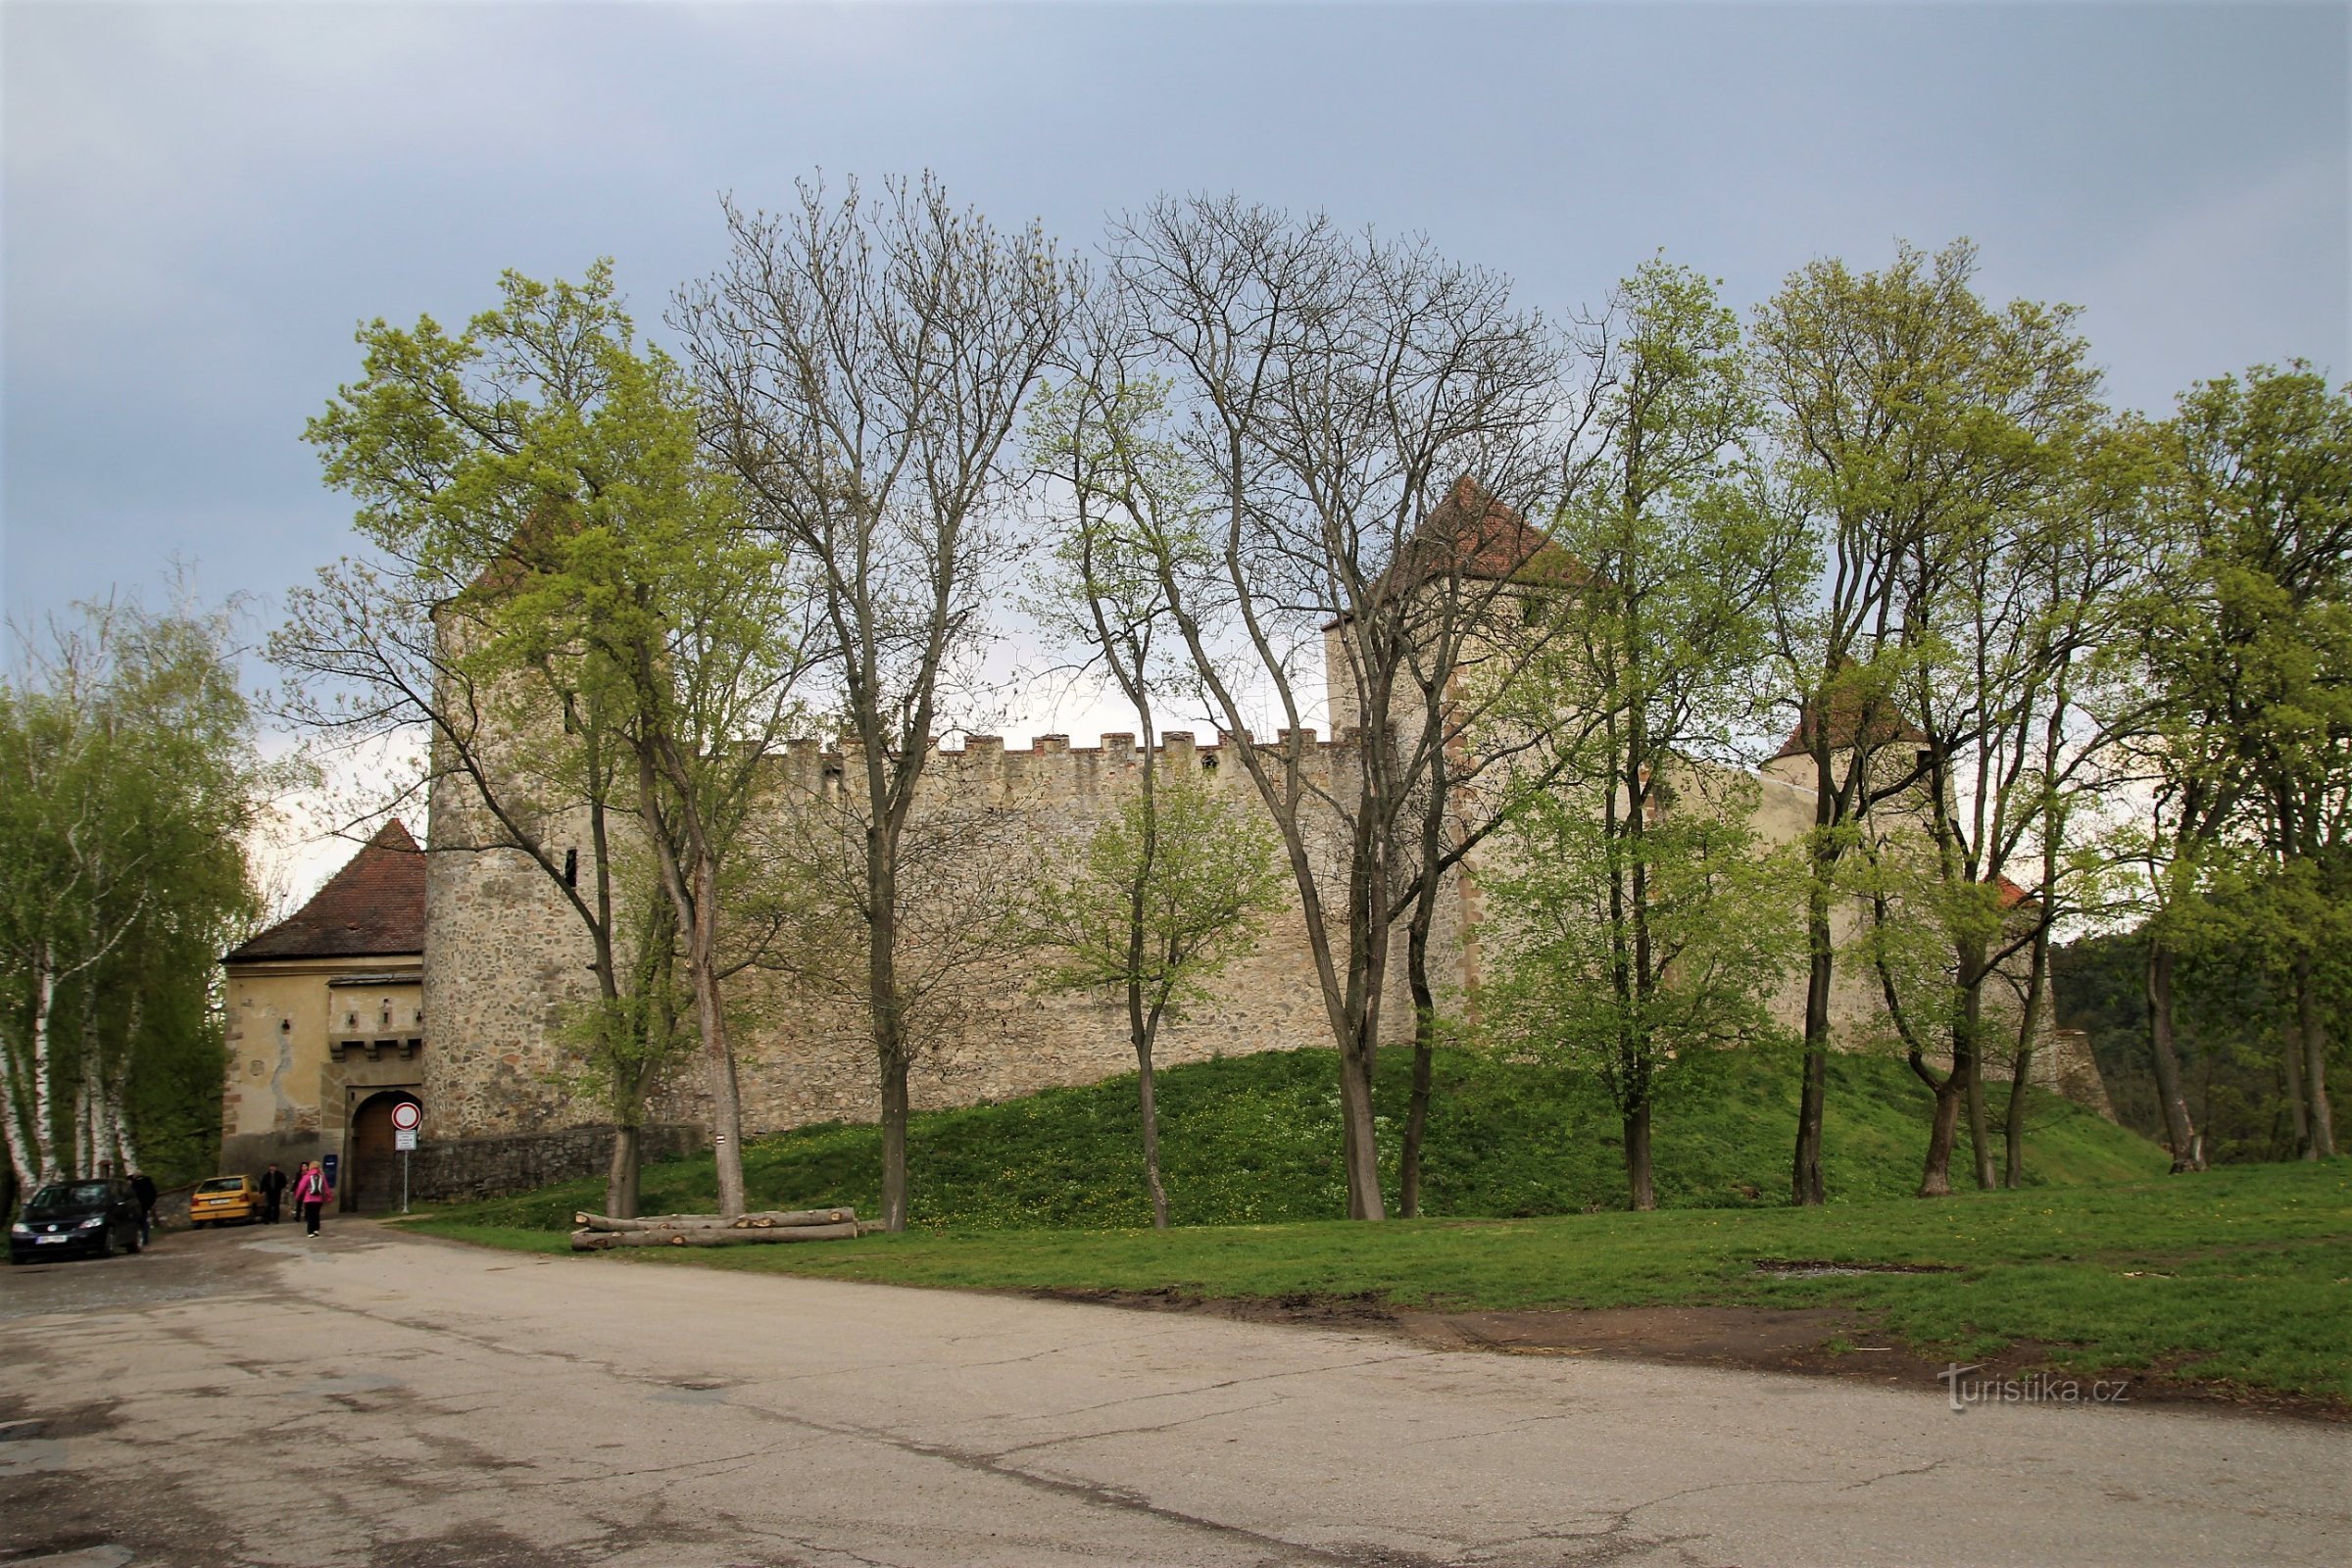 Veverří - вежі замку на західній стороні